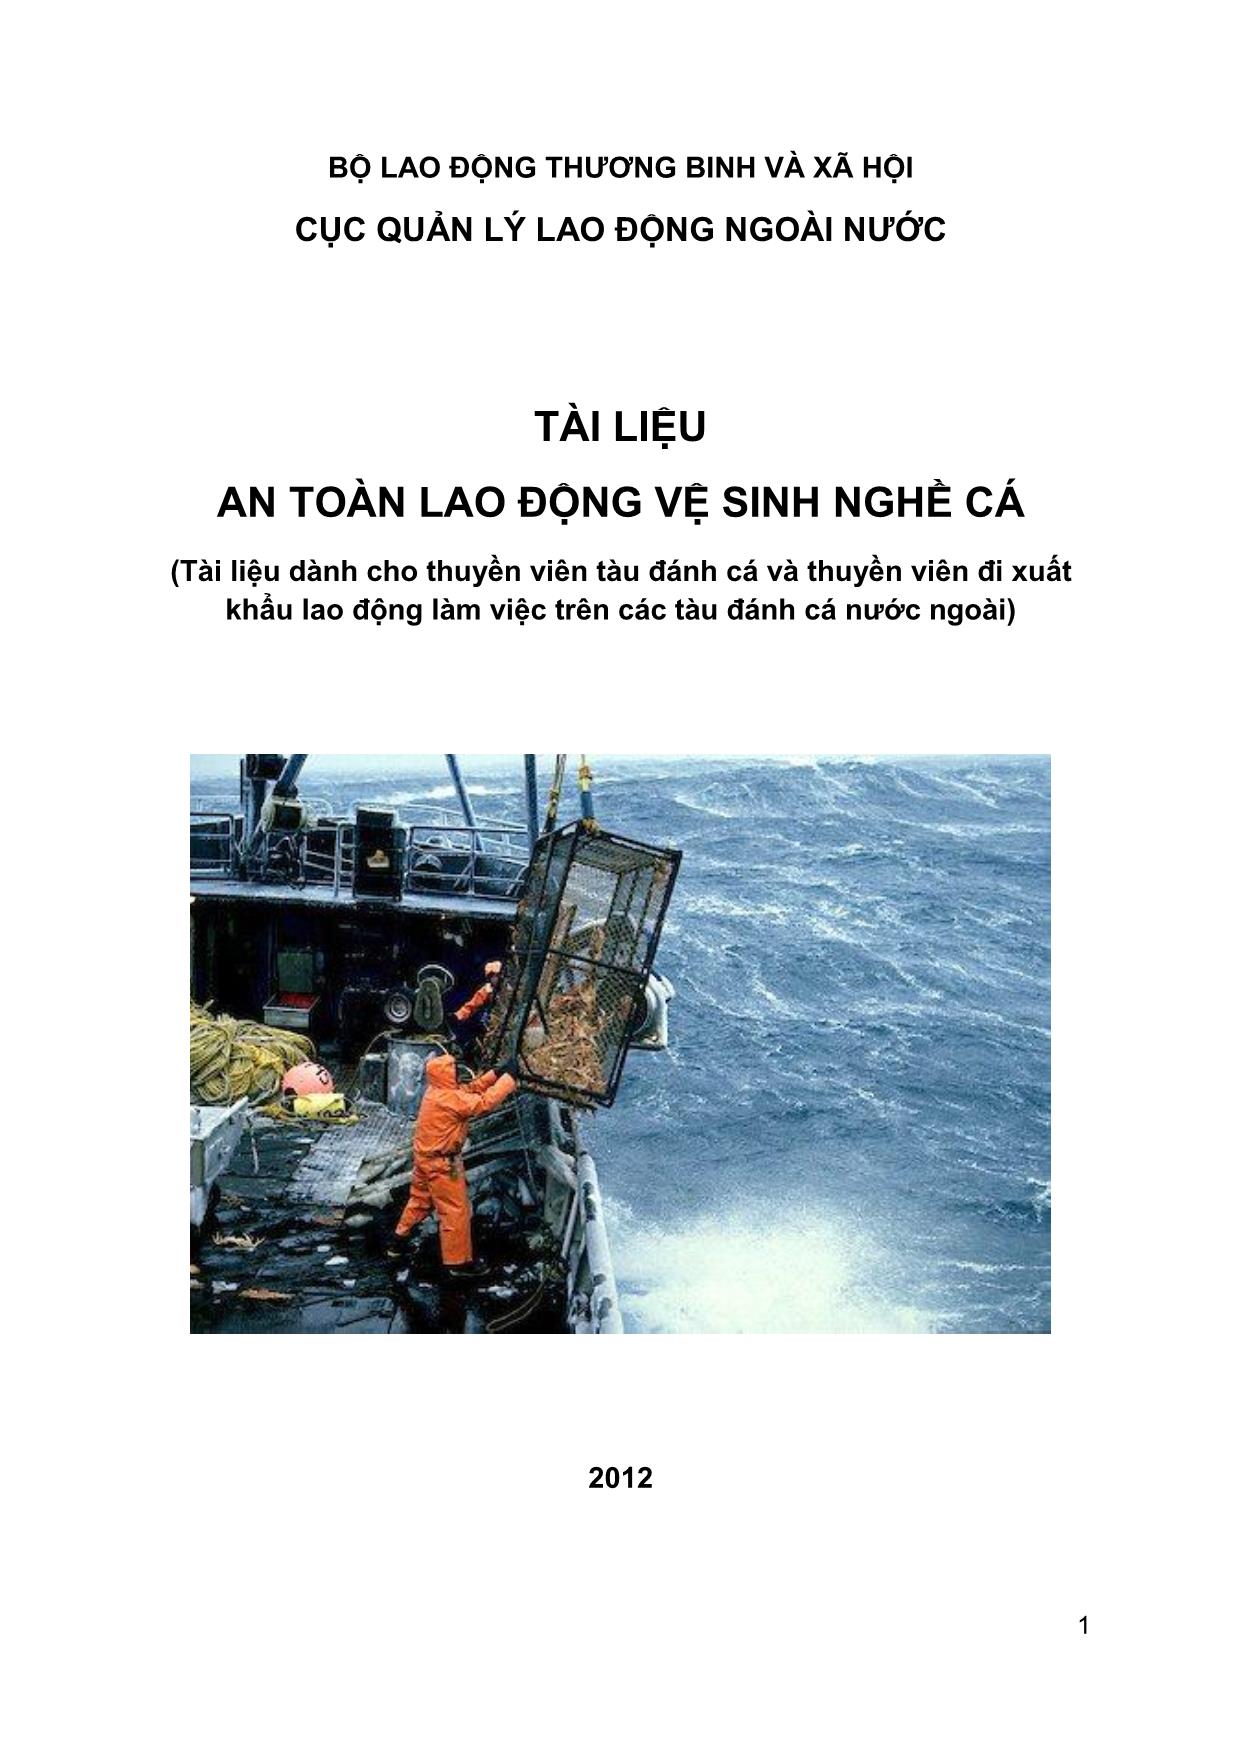 Tài liệu an toàn lao động vệ sinh nghề cá trang 1